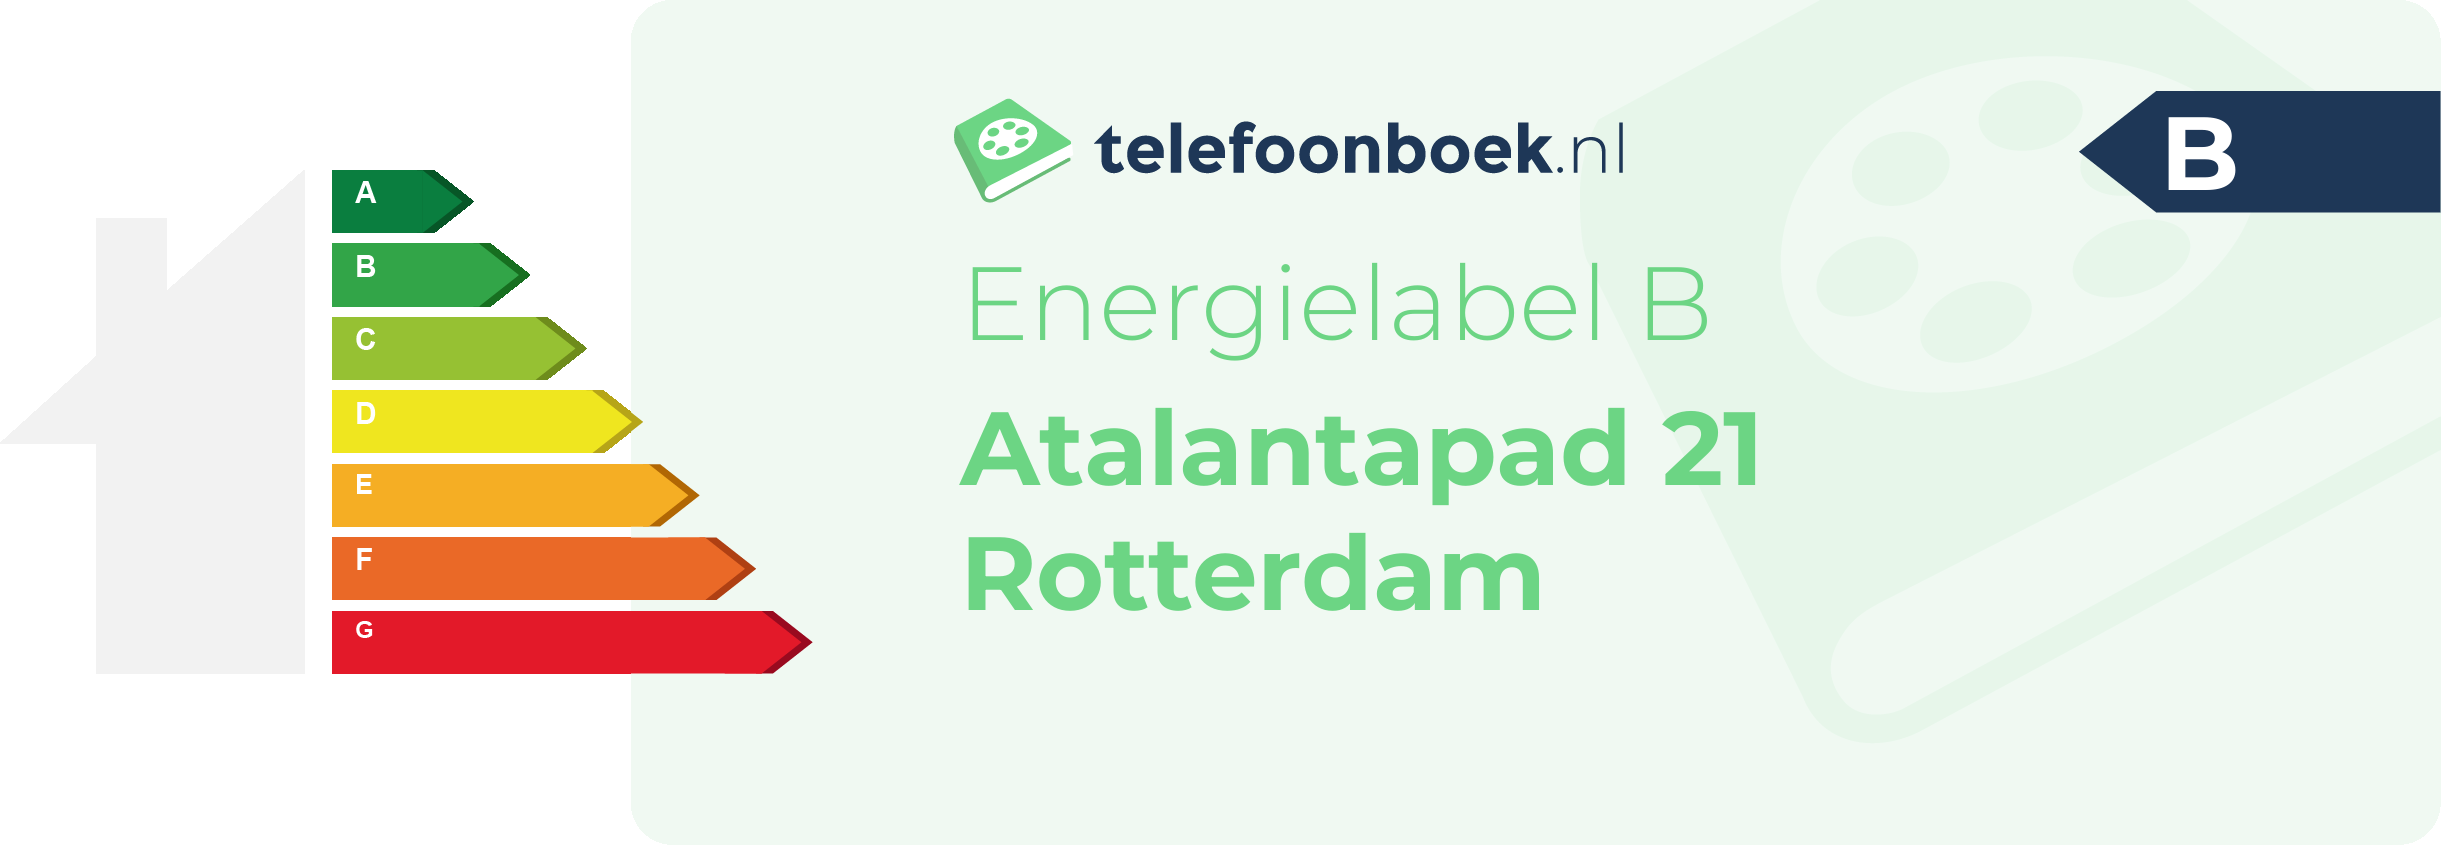 Energielabel Atalantapad 21 Rotterdam